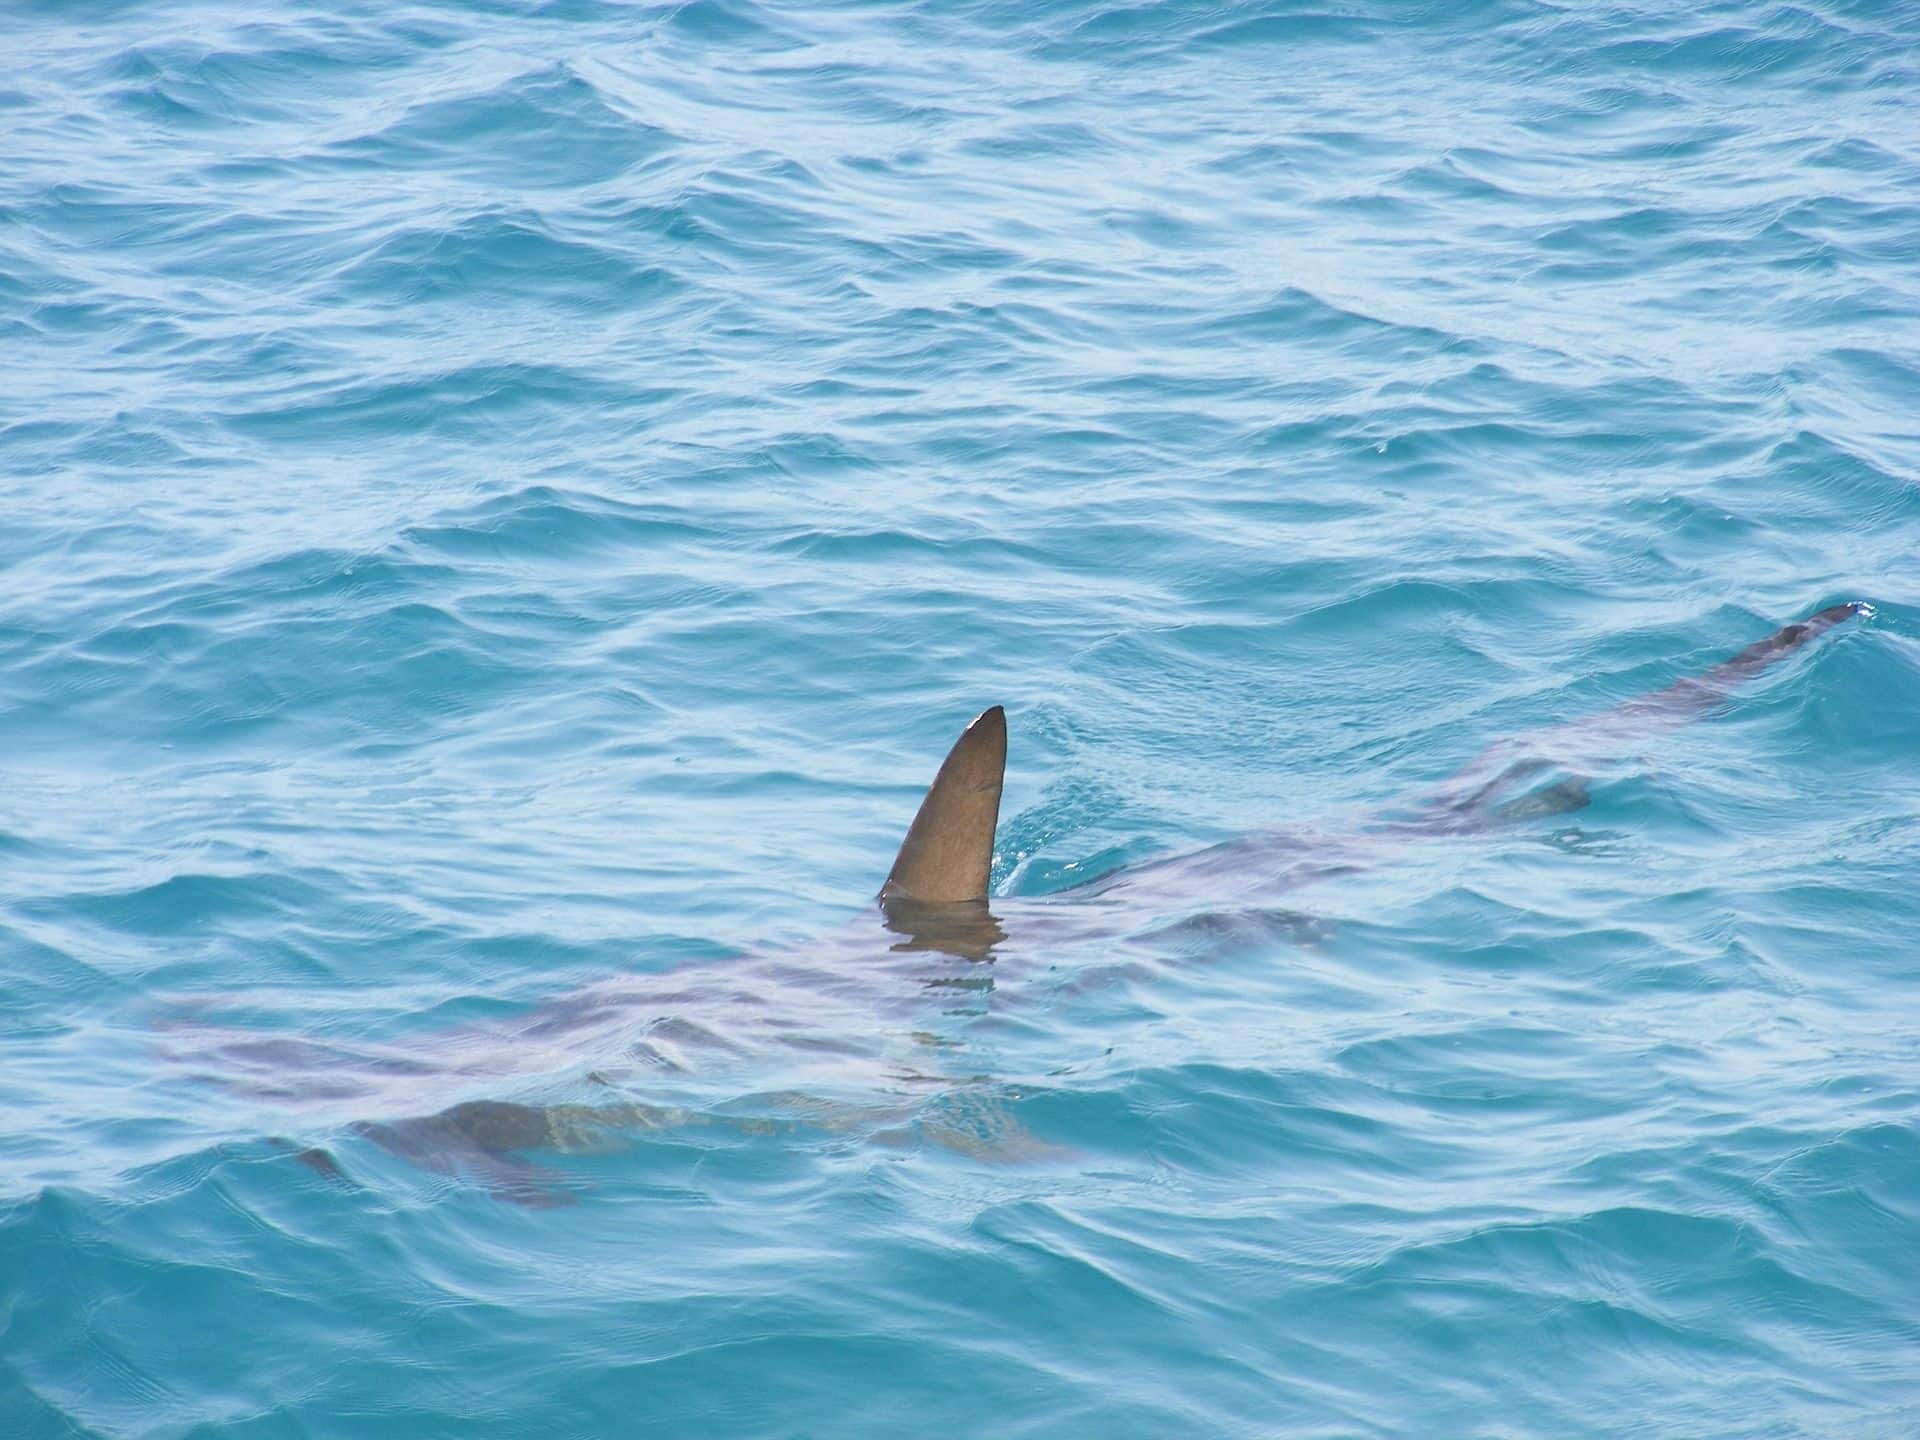 Gli squali martello sono relativamente “comuni” nel Mar Rosso: gli animali raramente emergono in superficie. Se vuoi vederli in Egitto, devi andare lontano, fino alla barriera corallina esterna, e fare immersioni lì.